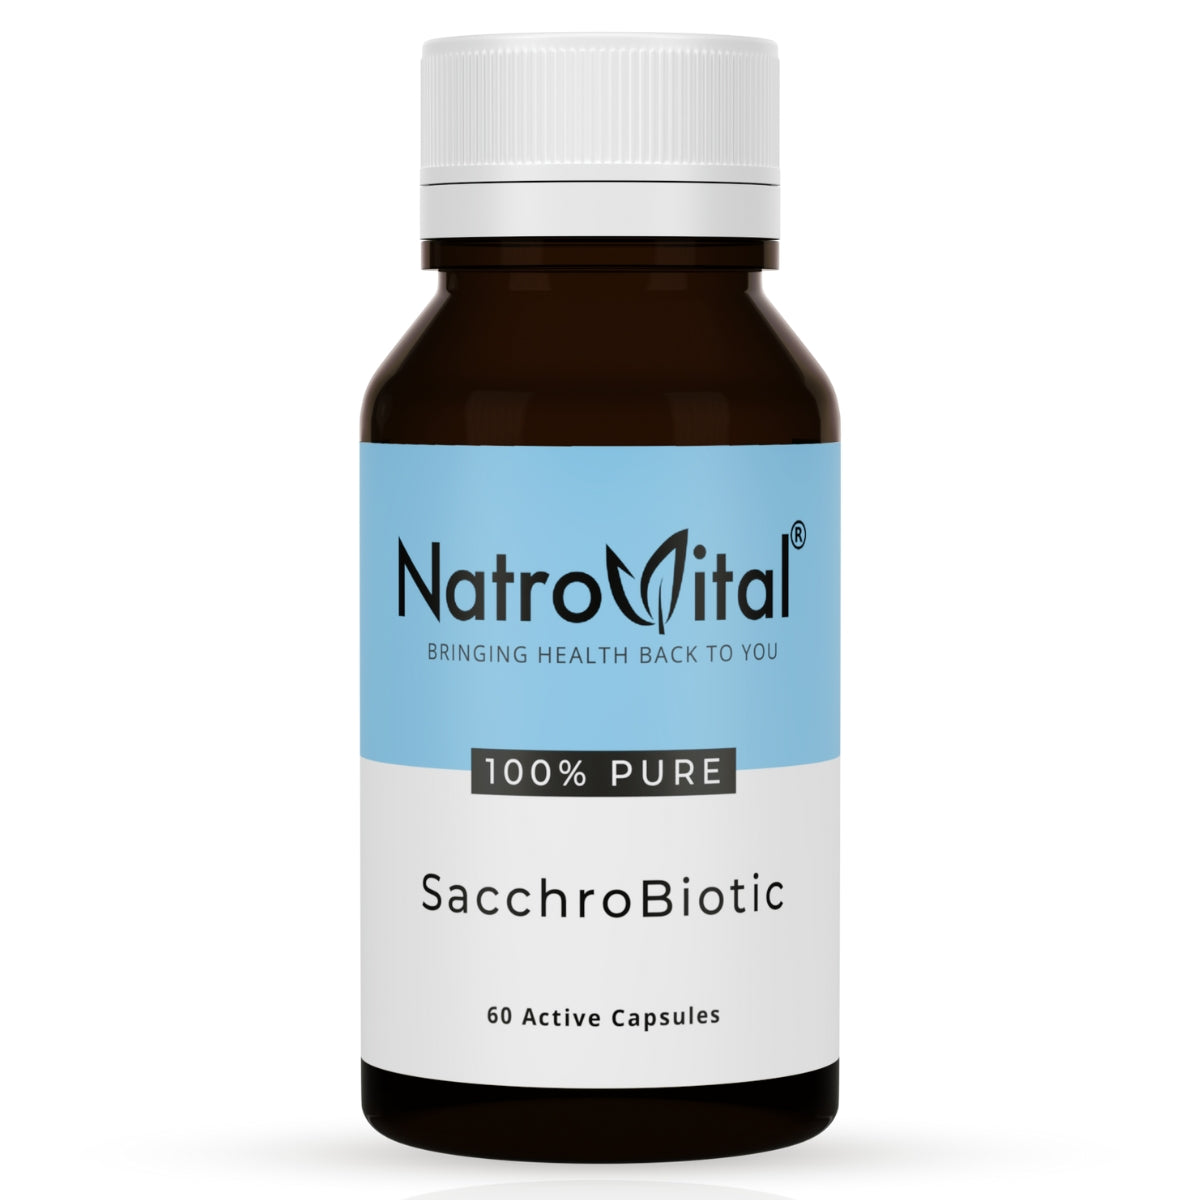 NatroVital SacchroBiotic 60 Capsules | NatroVital